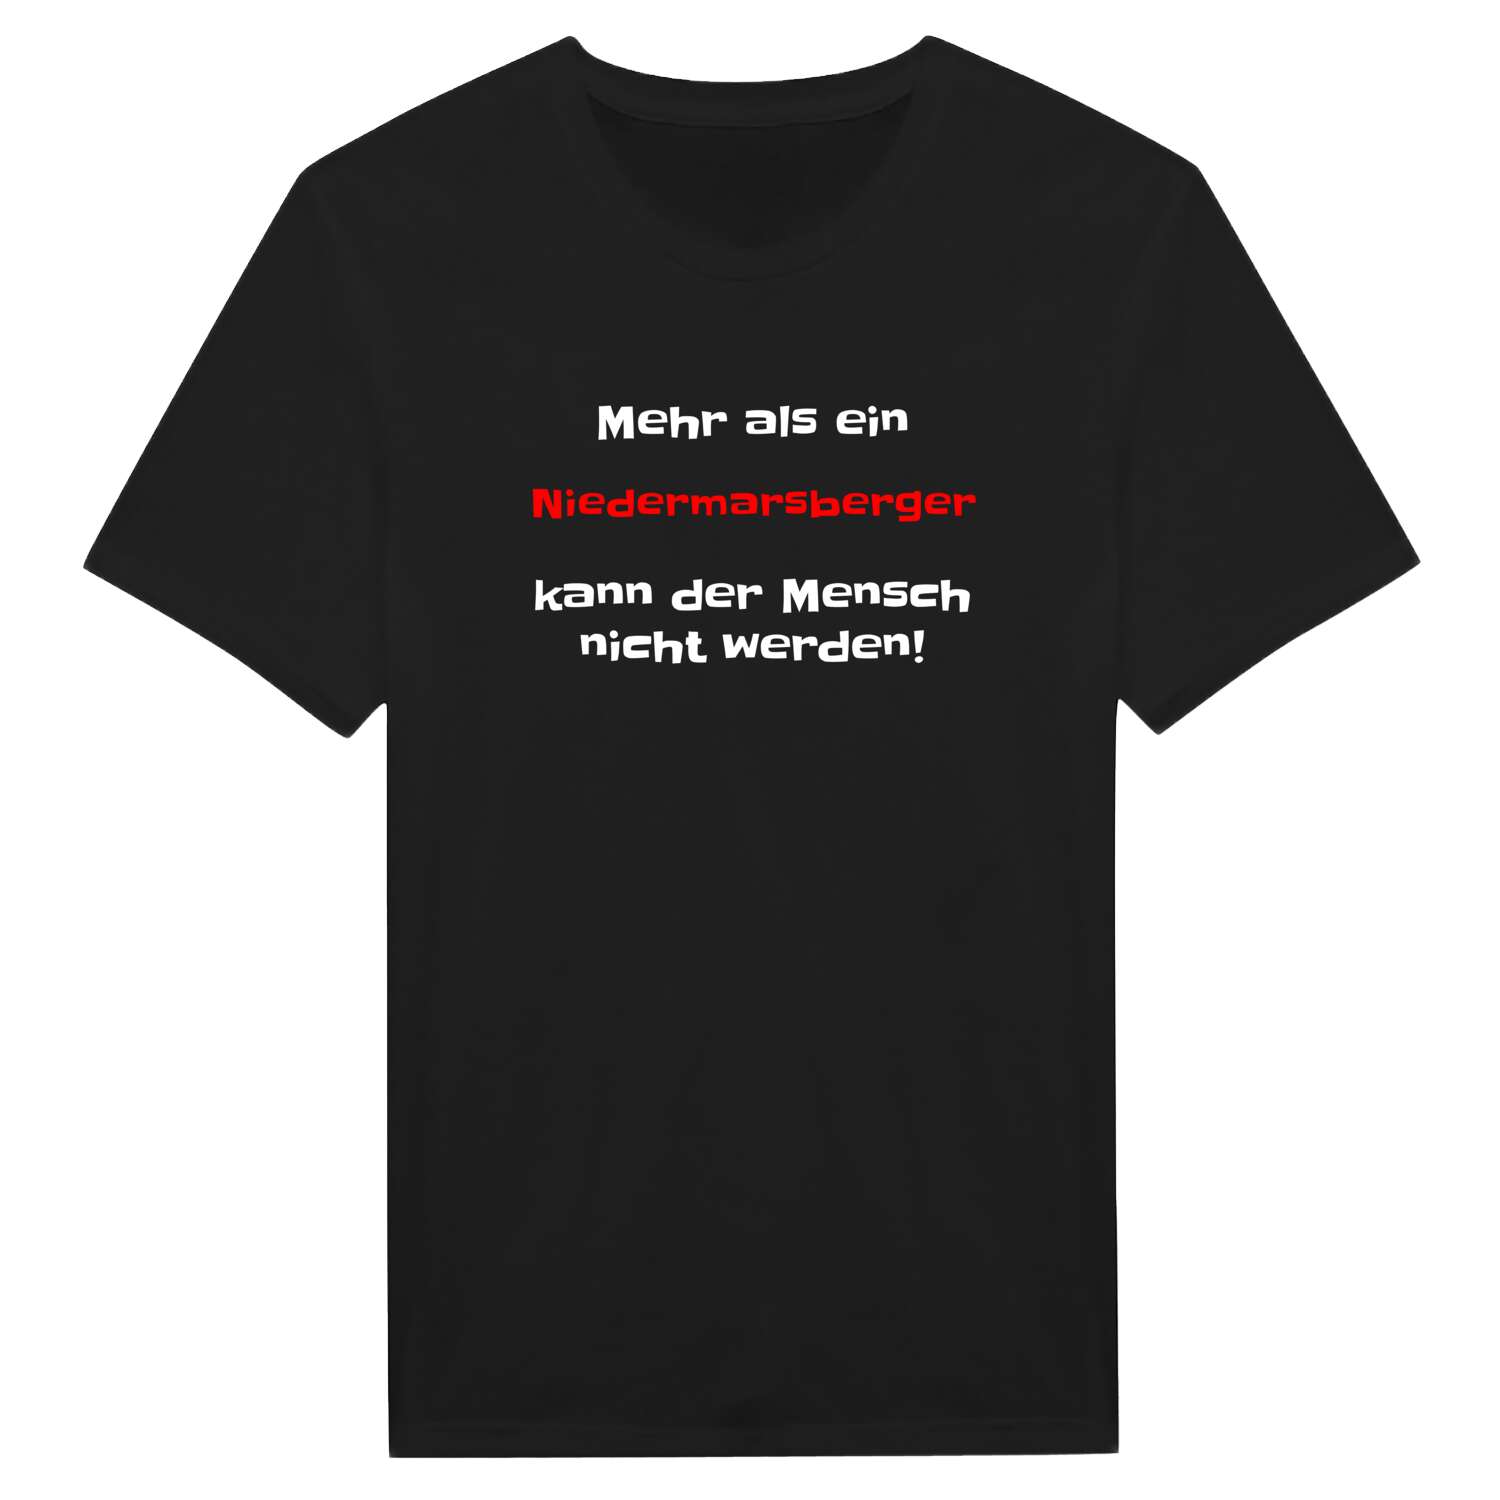 Niedermarsberg T-Shirt »Mehr als ein«